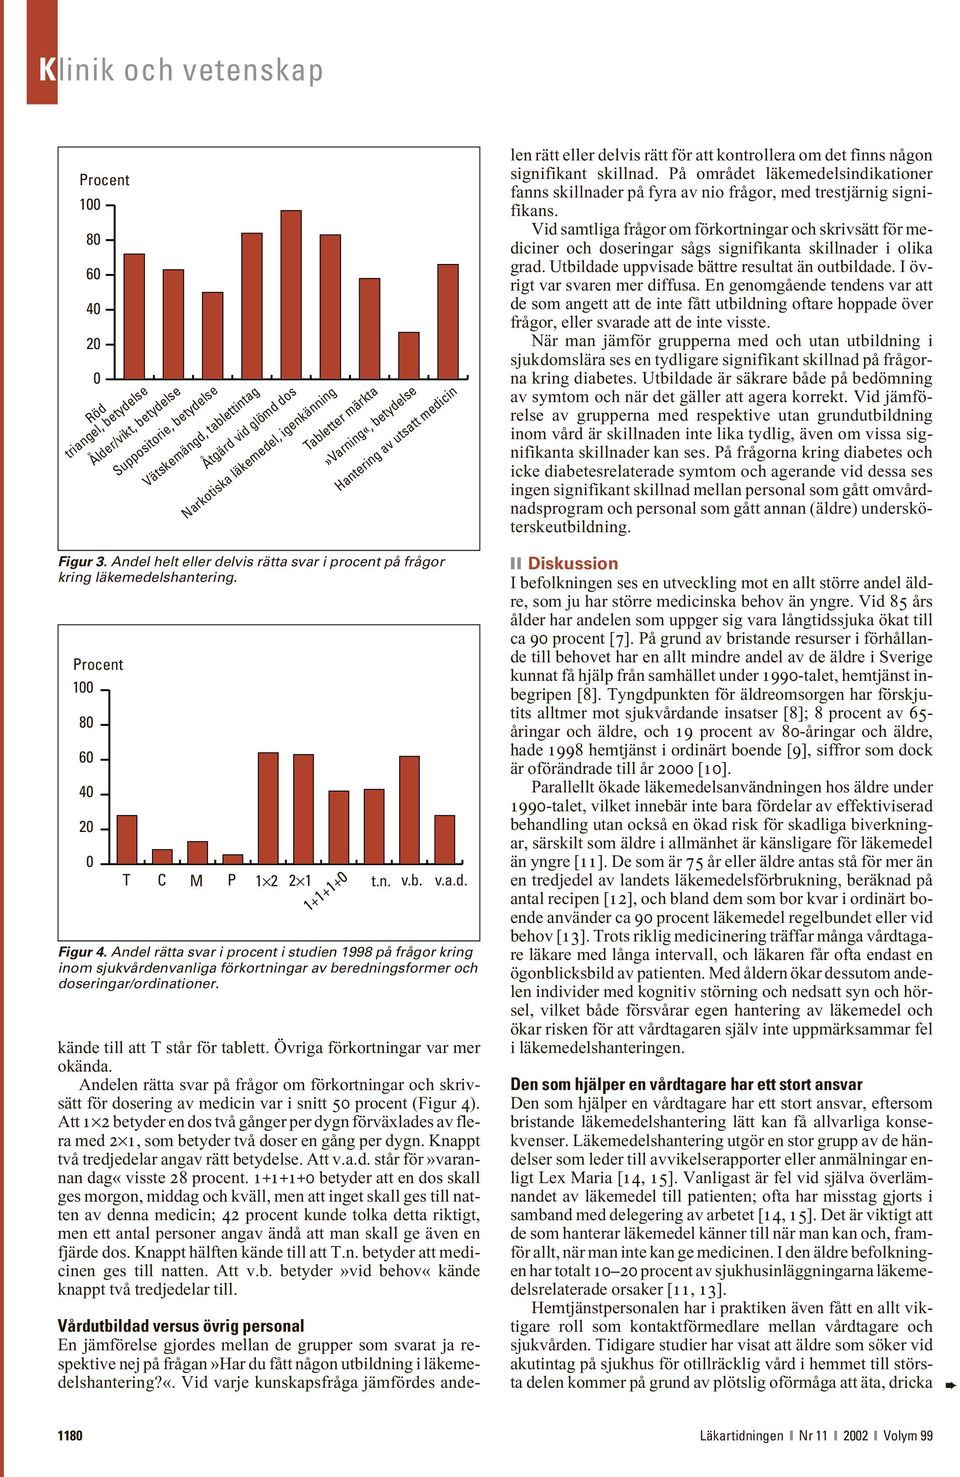 medicin v.a.d. Figur 4. Andel rätta svar i procent i studien 1998 på frågor kring inom sjukvårdenvanliga förkortningar av beredningsformer och doseringar/ordinationer.